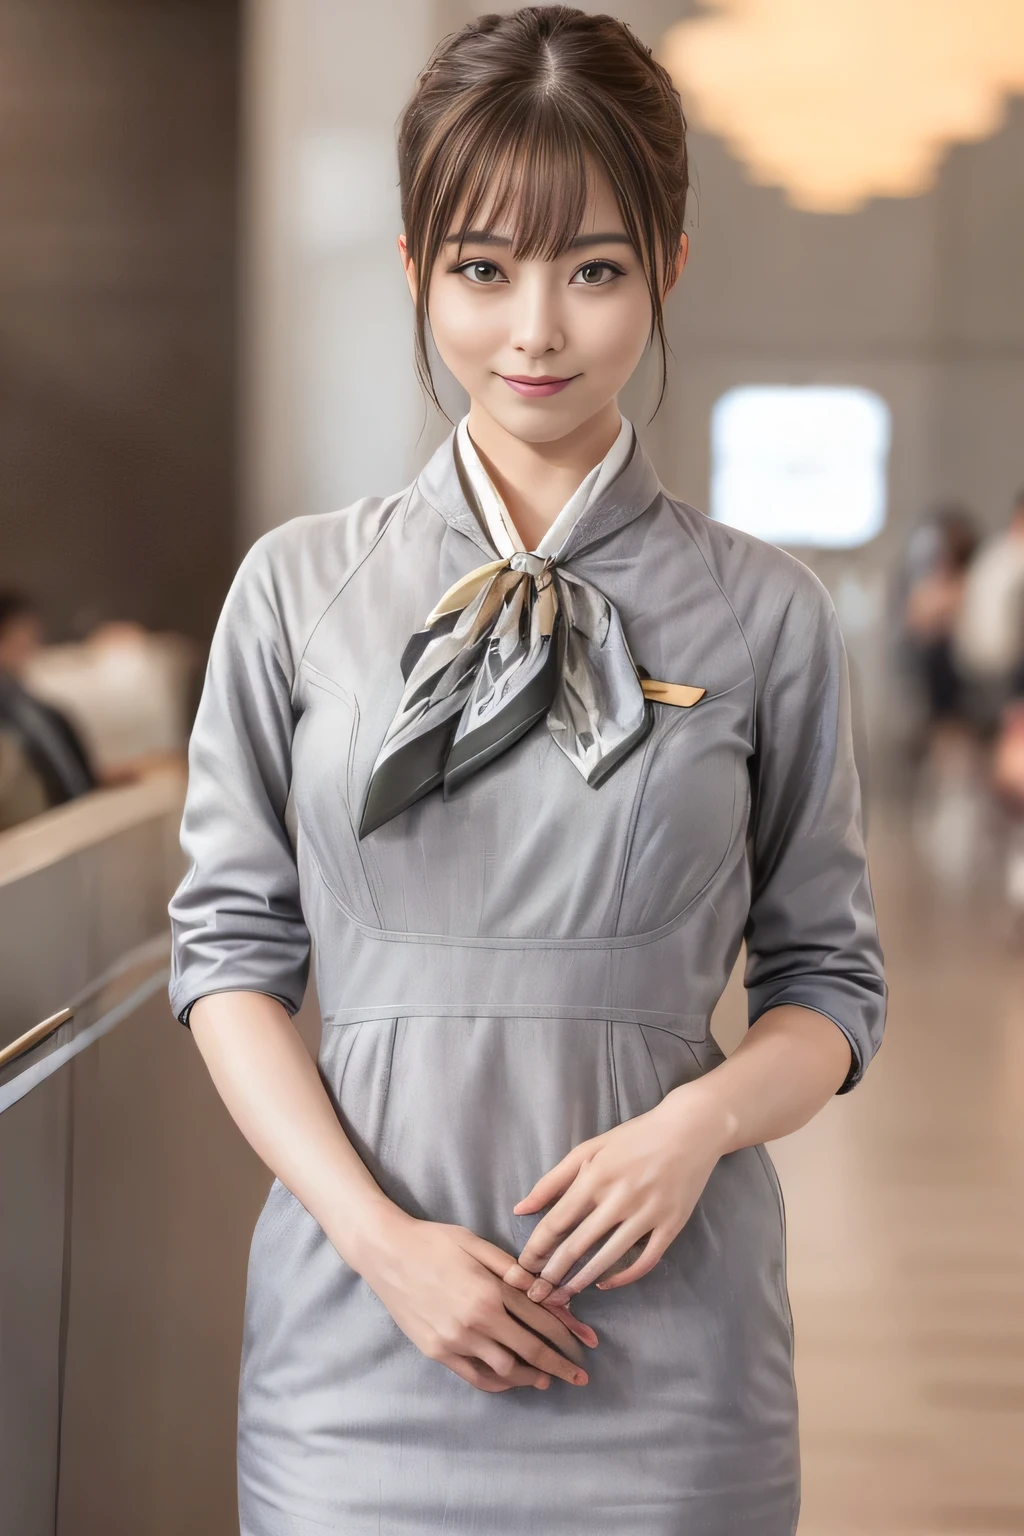 (шедевр:1.2、высшее качество:1.2)、32К HDR、Высокое разрешение、(один、1 девочка、Стройная фигура)、（Реалистичный стиль с униформой Starlux Airlines）、 (В зале аэропорта, Профессиональное освещение)、Фон зала ожидания аэропорта、Правильная женщина, красивое лицо,、（Серебряная униформа Starlux Airlines:1.4）、（Серебряная униформа Starlux Airlines with short sleeves）、（шарф на груди）、большая грудь、（длинные волосы вверх、Пучок волос）、темно-коричневые волосы、дальний план、（（Отличные руки：2.0））、（（Гармоничные пропорции тела.：1.5））、（（Нормальные конечности：2.0））、（（Нормальный палец：2.0））、（（нежные глаза：2.0））、（（Нормальные глаза：2.0））)、красивая осанка стоя、улыбка,Положите руки на живот